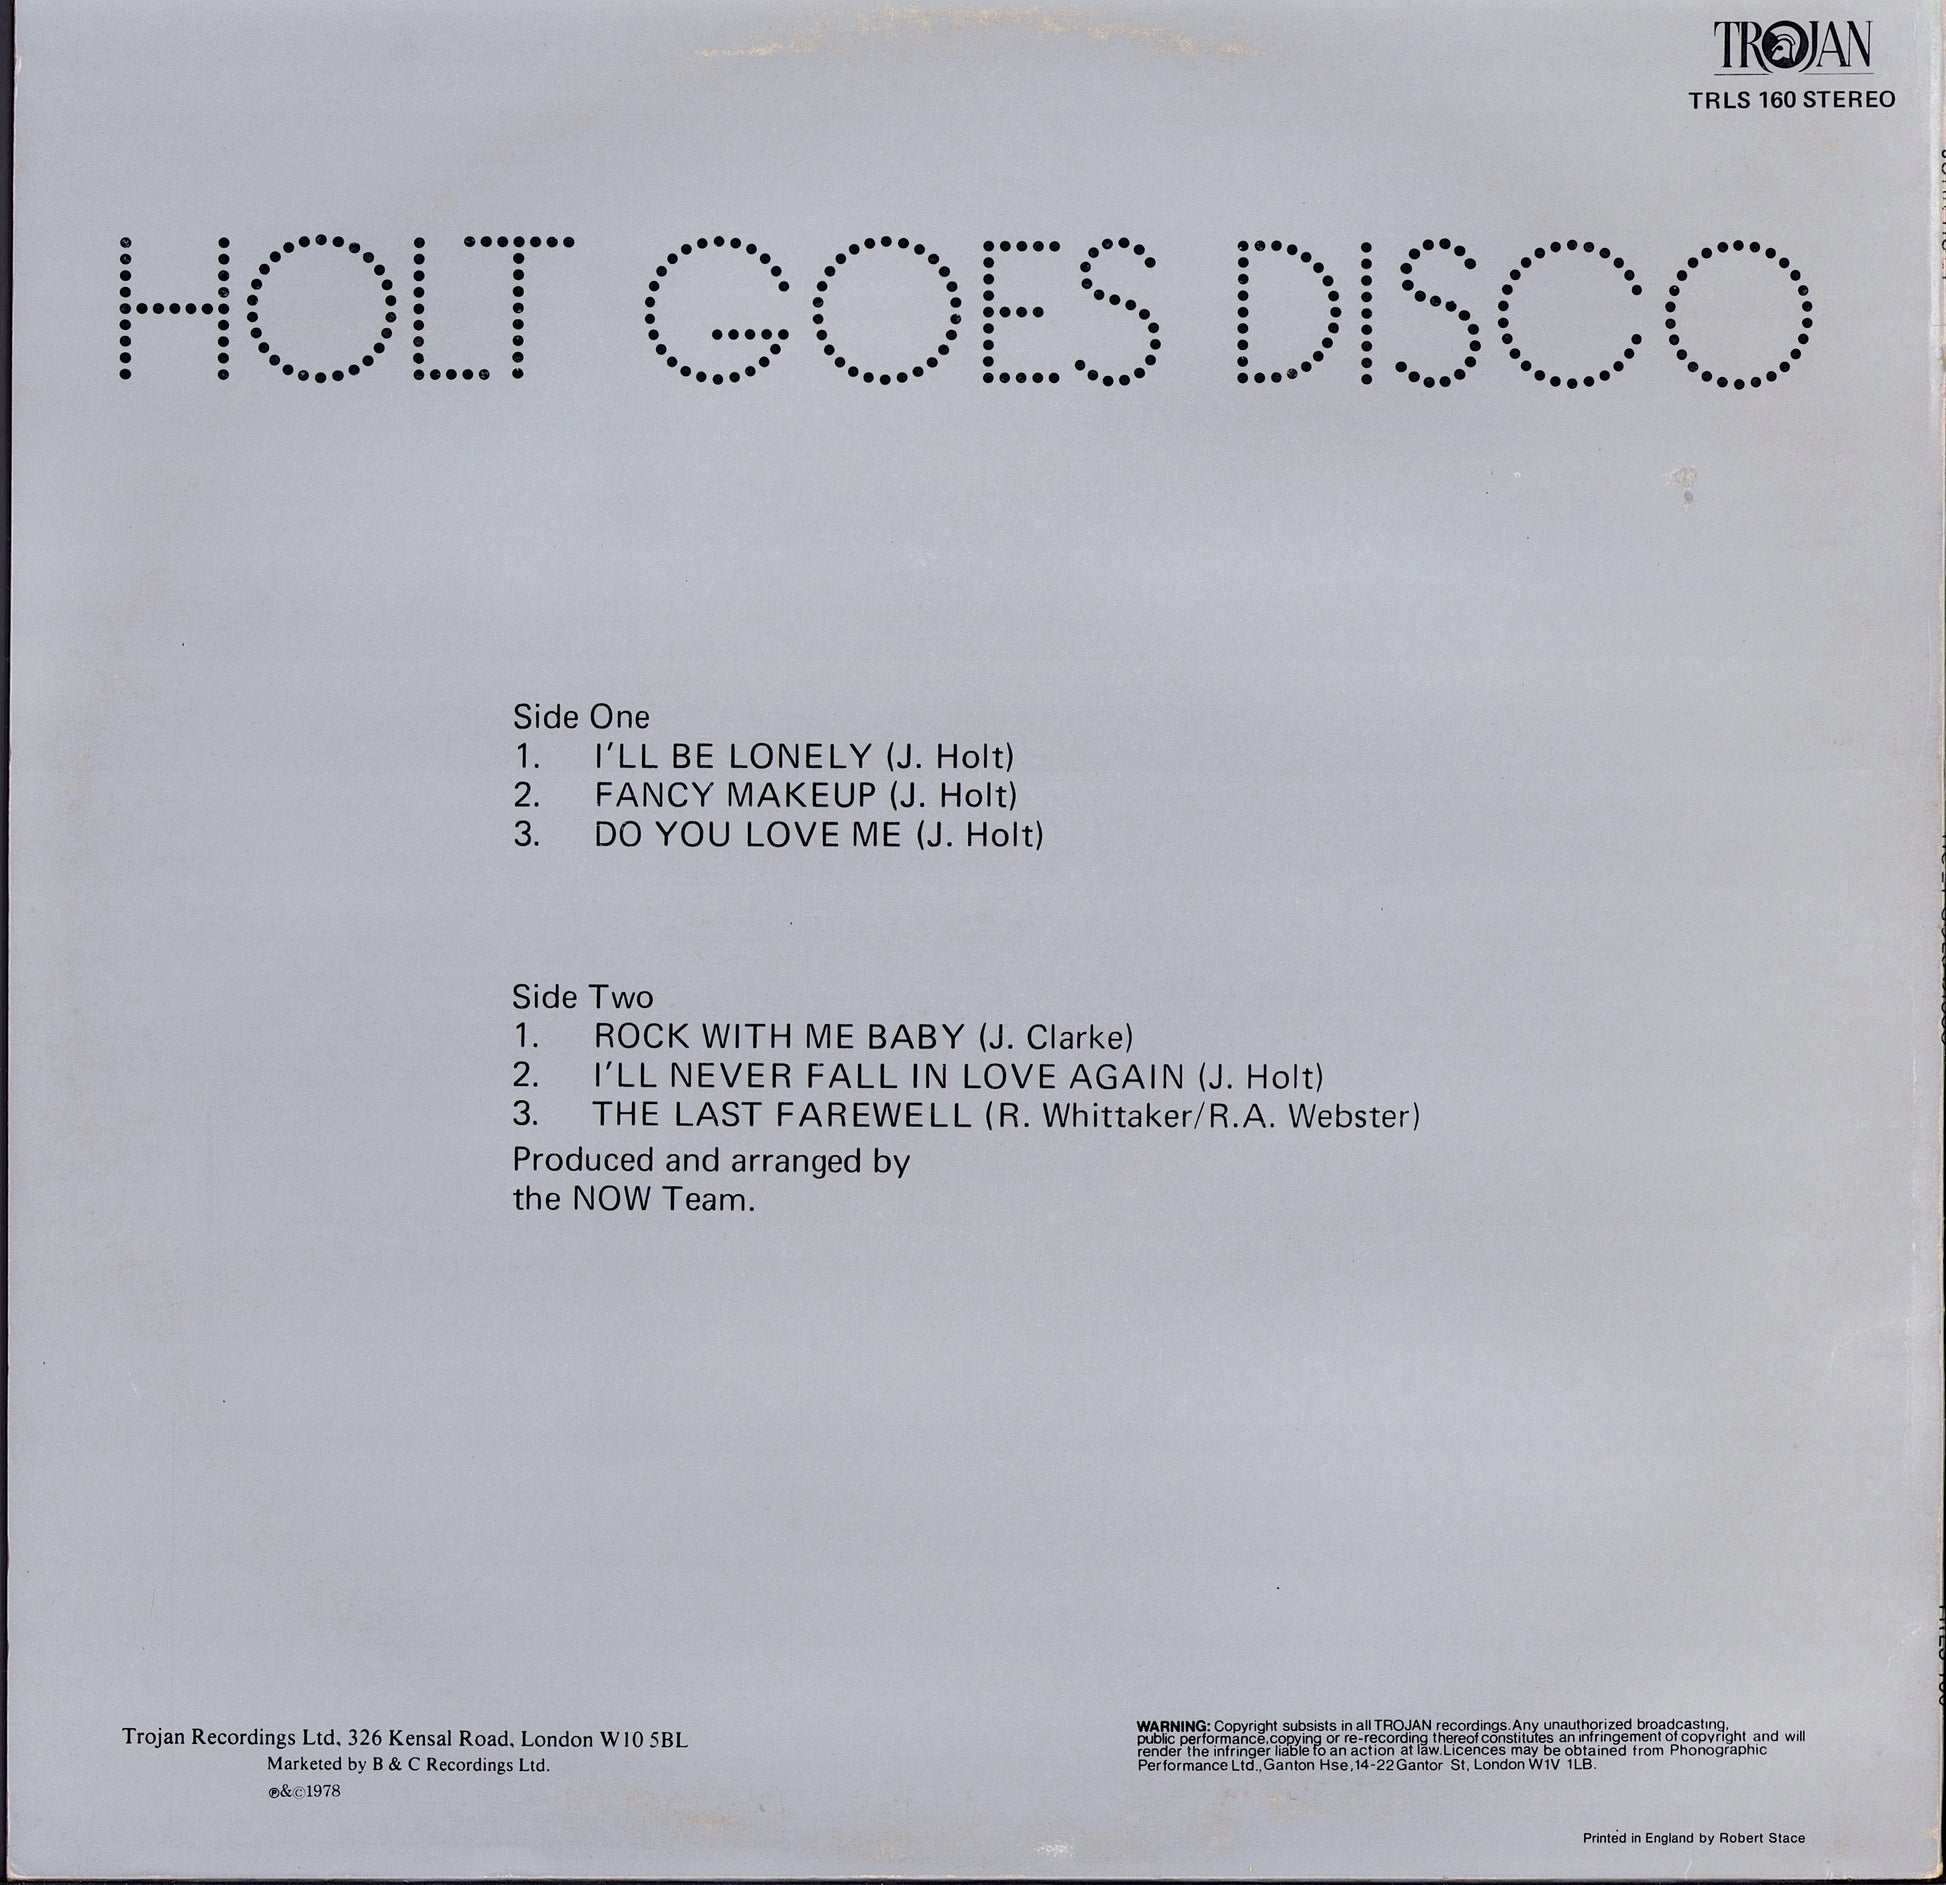 John Holt - Holt Goes Disco Vinyl LP